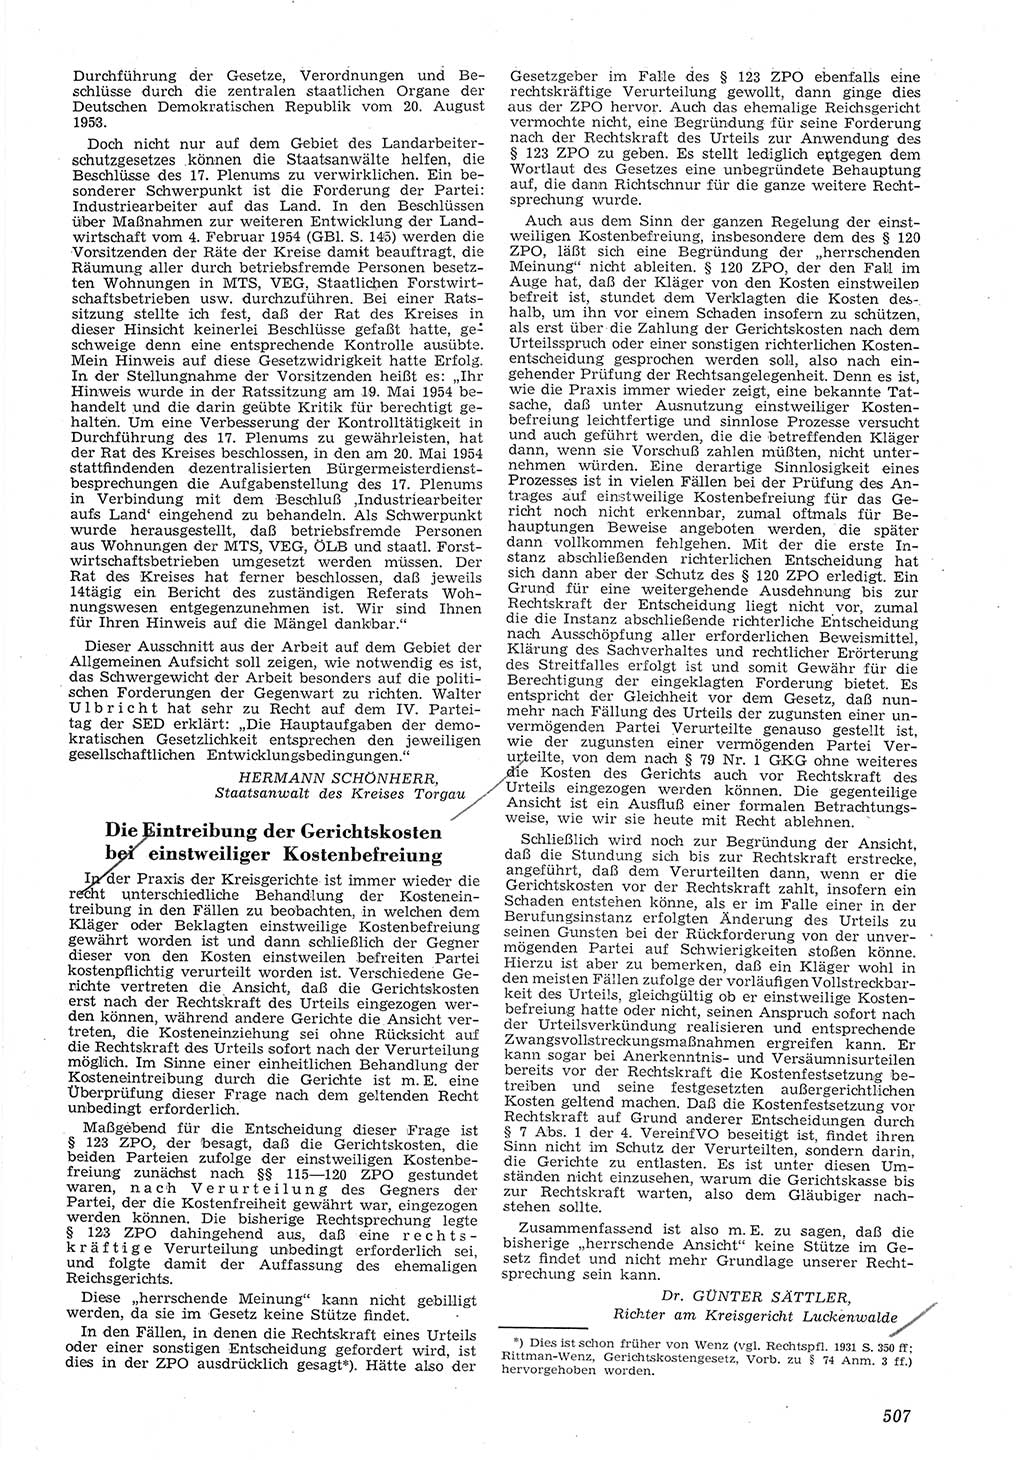 Neue Justiz (NJ), Zeitschrift für Recht und Rechtswissenschaft [Deutsche Demokratische Republik (DDR)], 8. Jahrgang 1954, Seite 507 (NJ DDR 1954, S. 507)